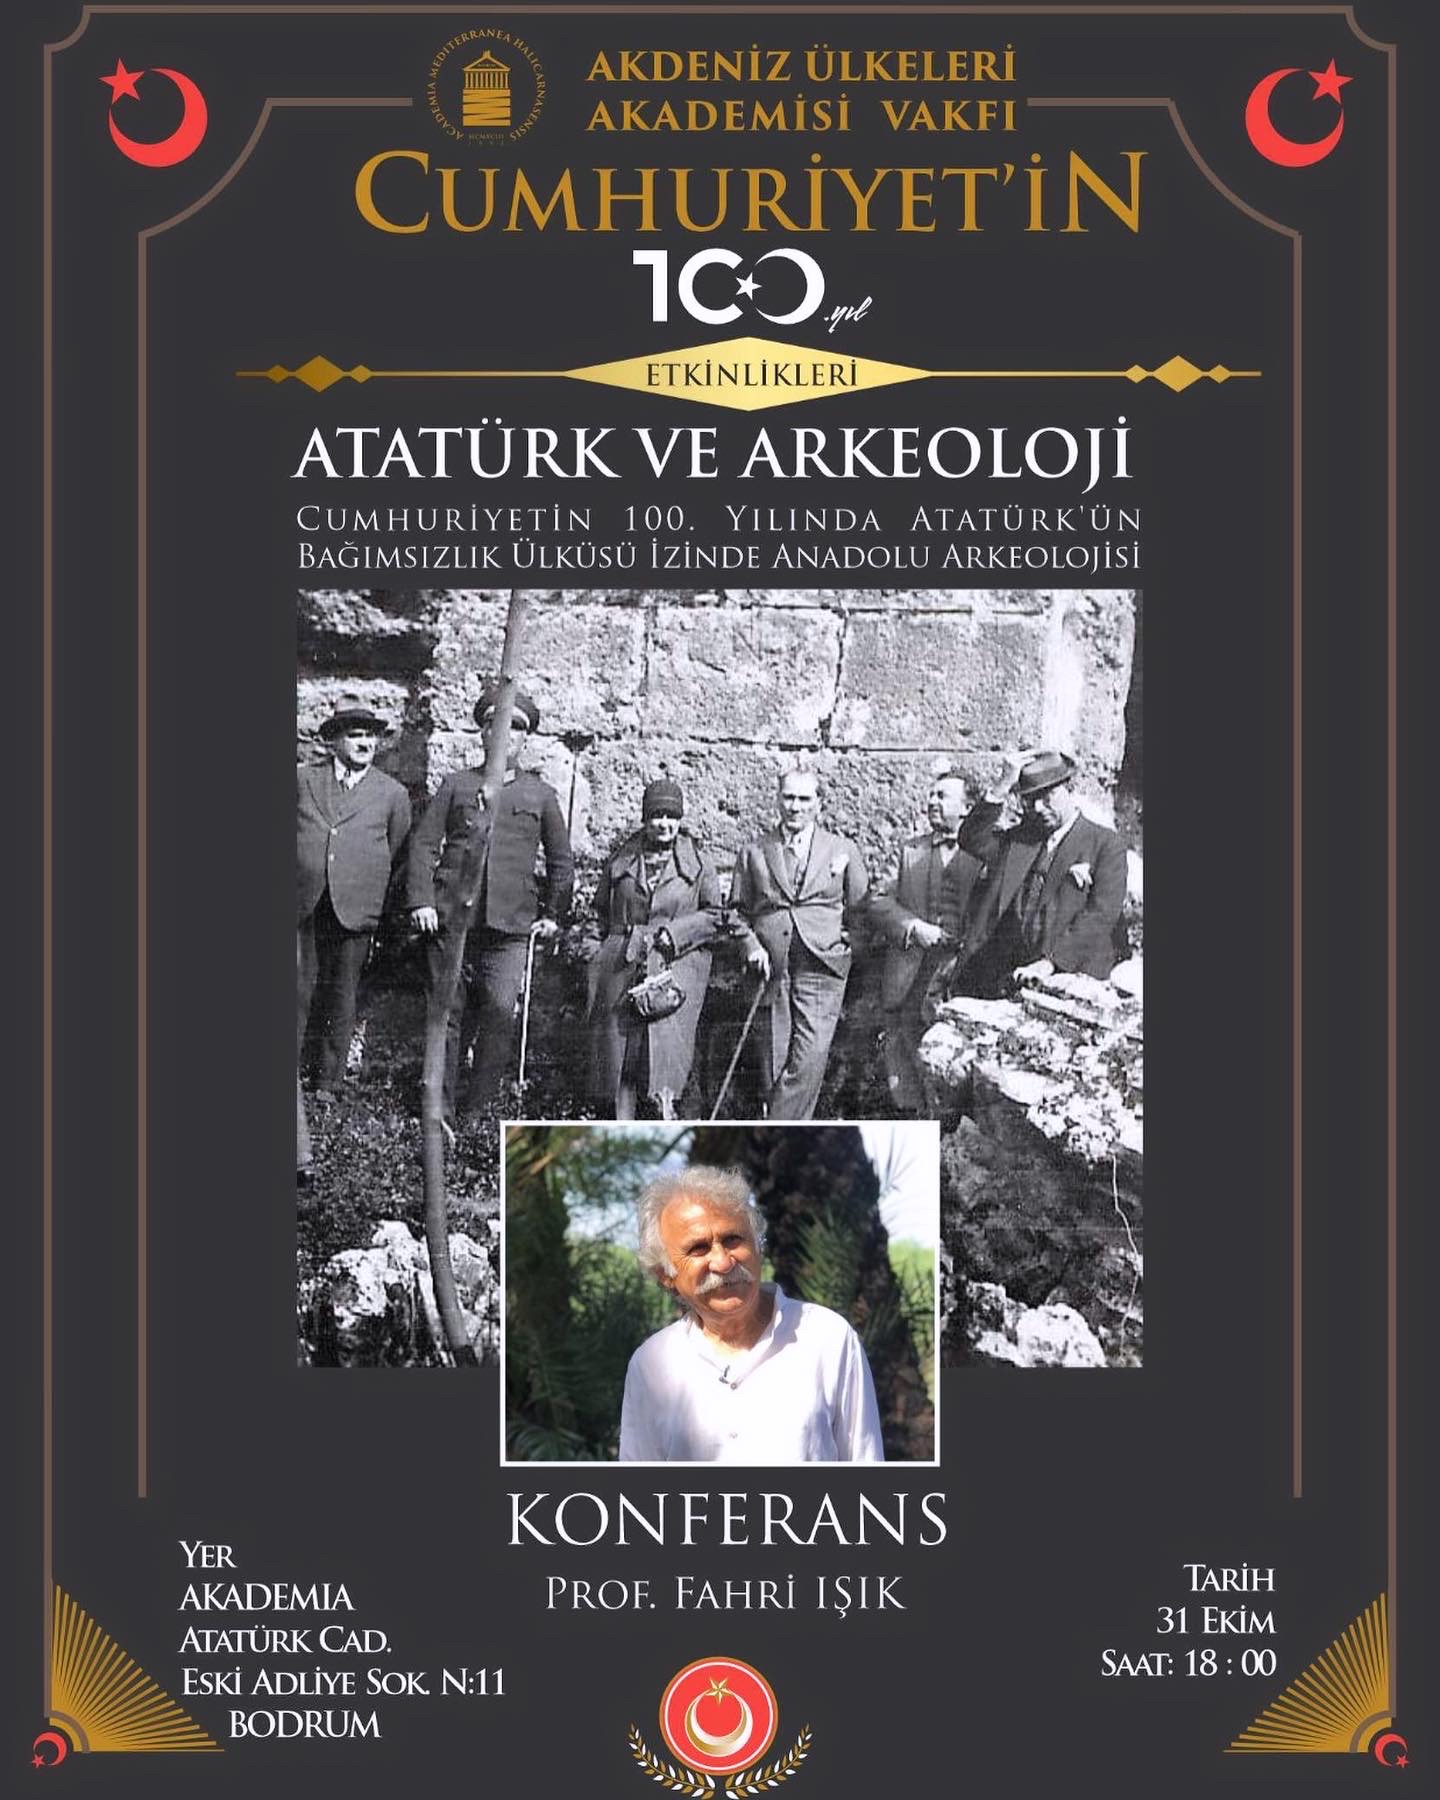 Prof. Fahri Işık’tan ‘Atatürk ve Arkeoloji’ konferansı bu akşam 18.00’de!